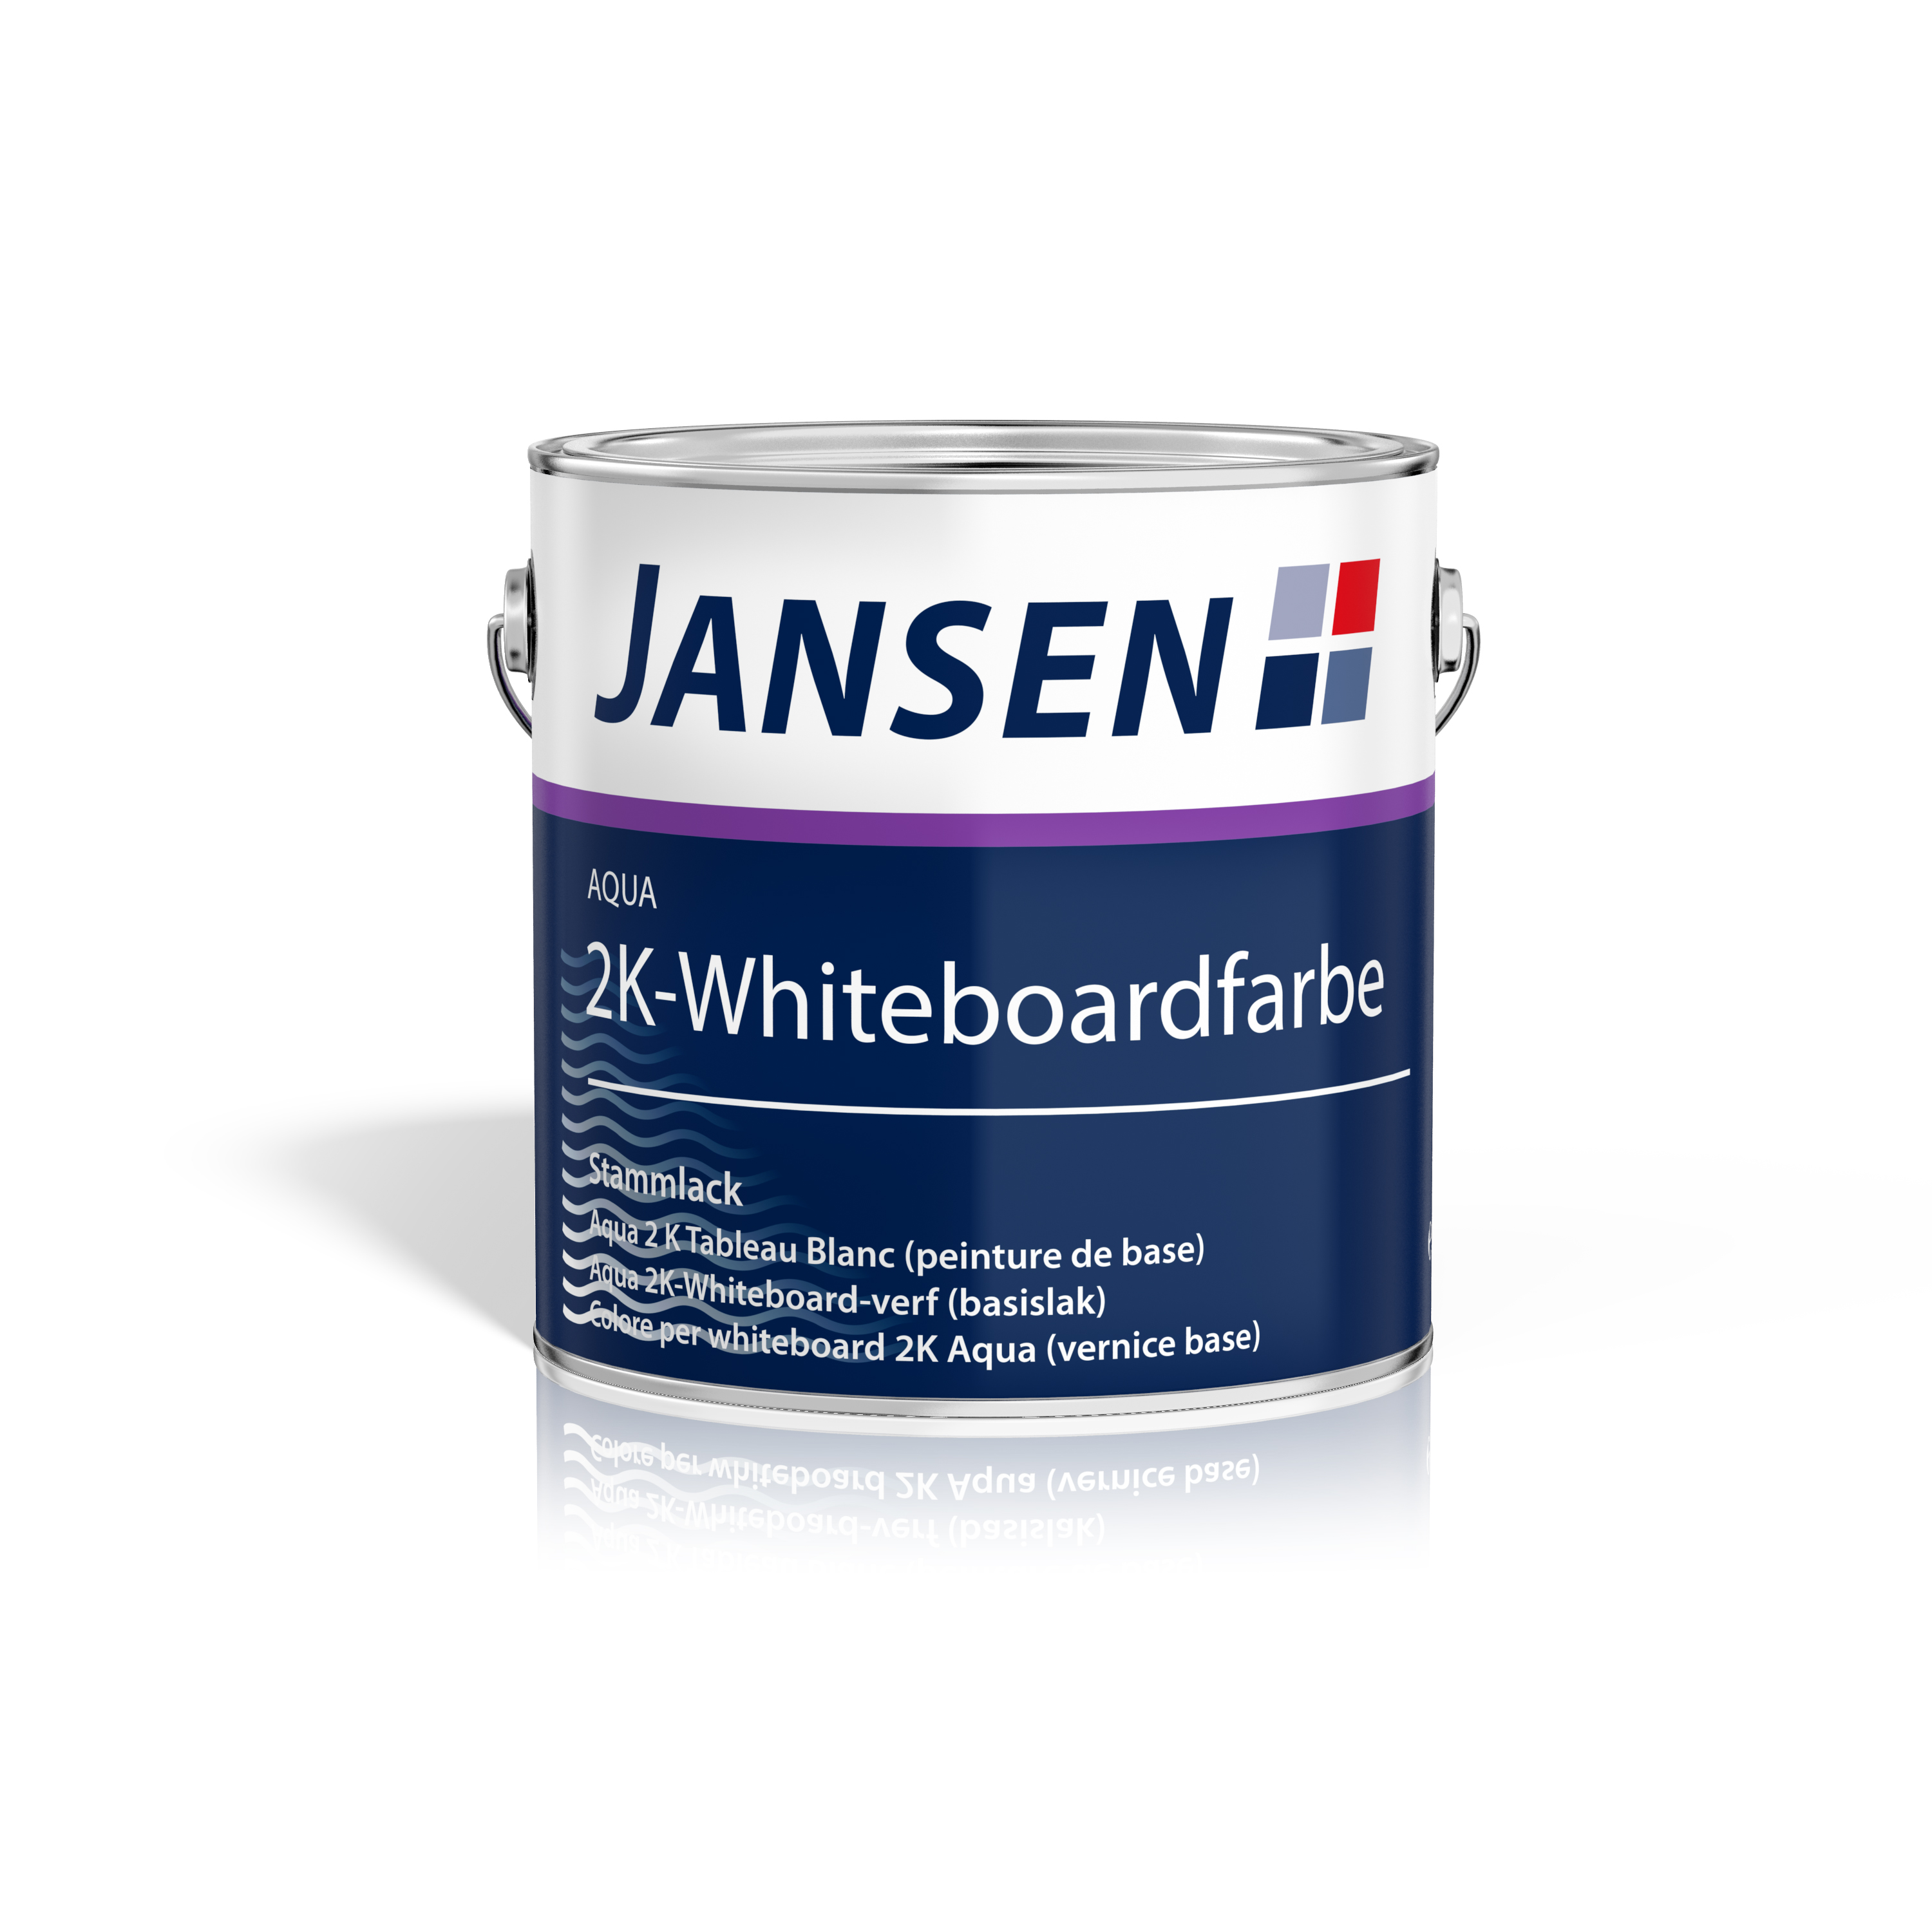 Jansen Aqua 2K-Whiteboardfarbe (1,96 kg) inkl. Härter (400g)